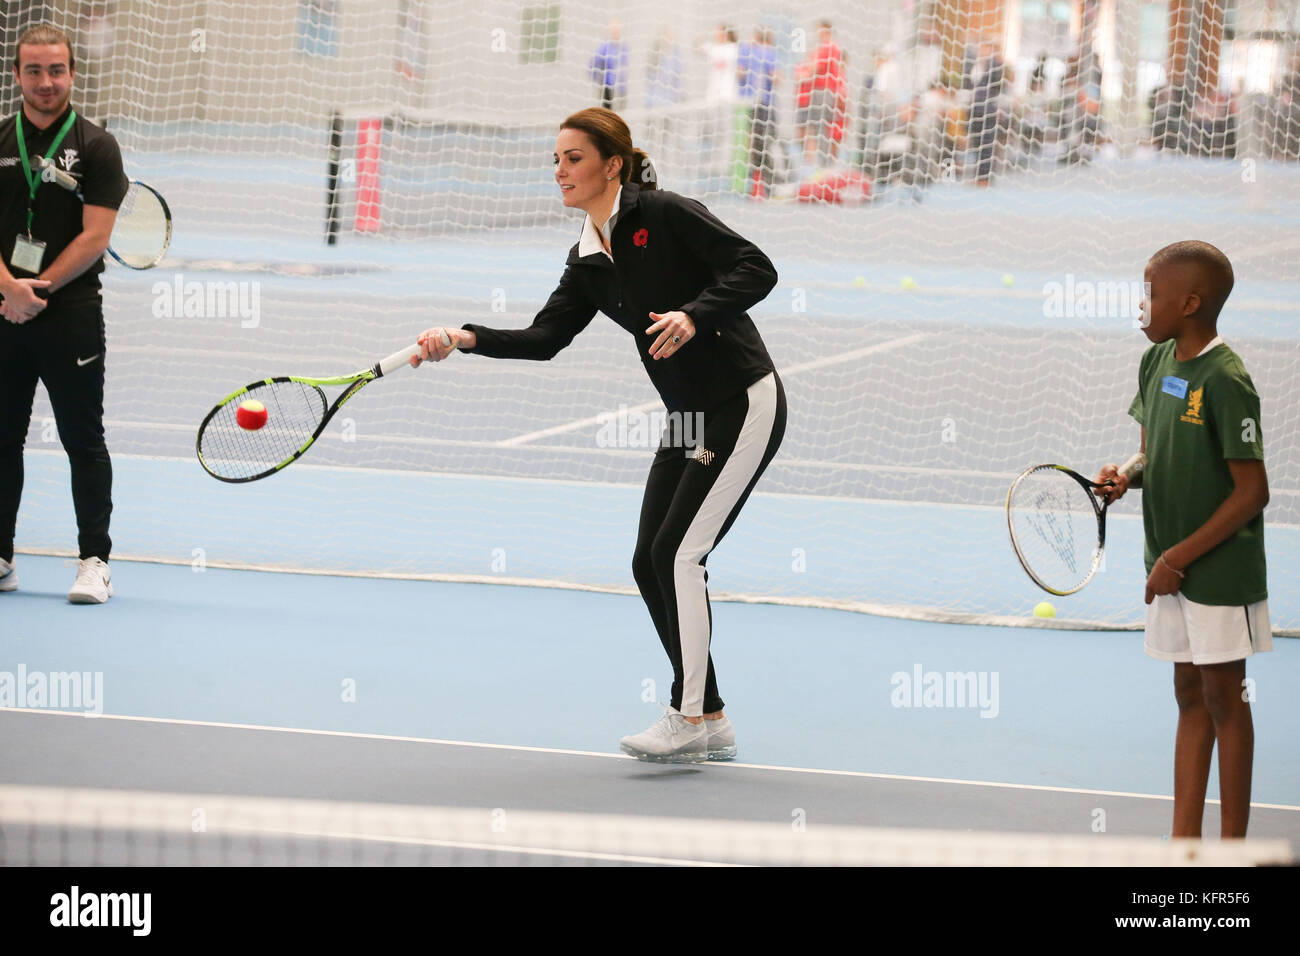 La duchesse de Cambridge prend part à une séance de tennis pour les enfants lors d'une visite à la lawn tennis association (LTA) à la National Tennis Center dans le sud-ouest de Londres. Banque D'Images